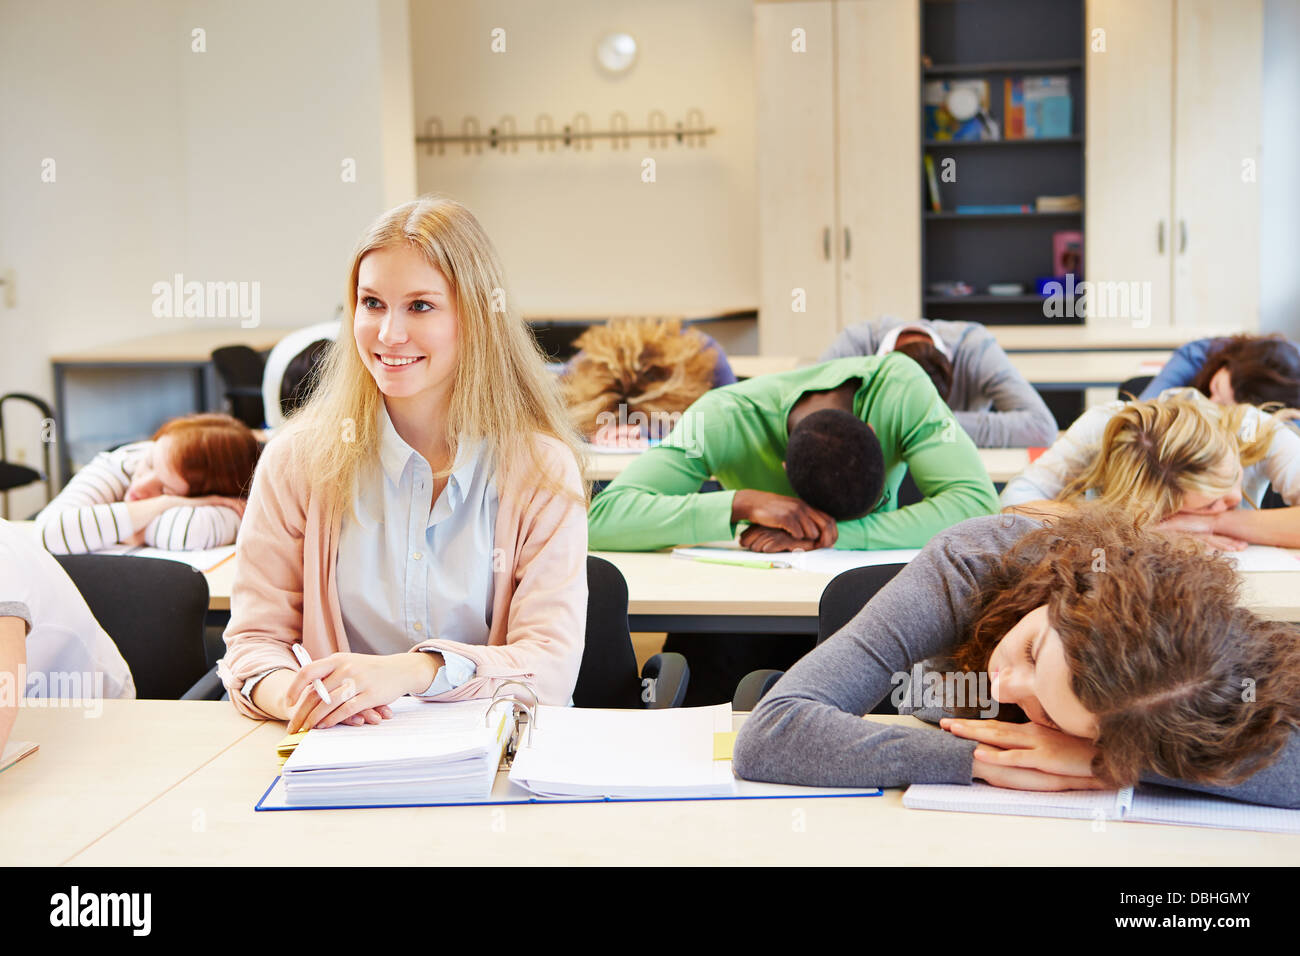 Studenten schlafen in Schule Klasse und junge Frau hält wach Stockfoto